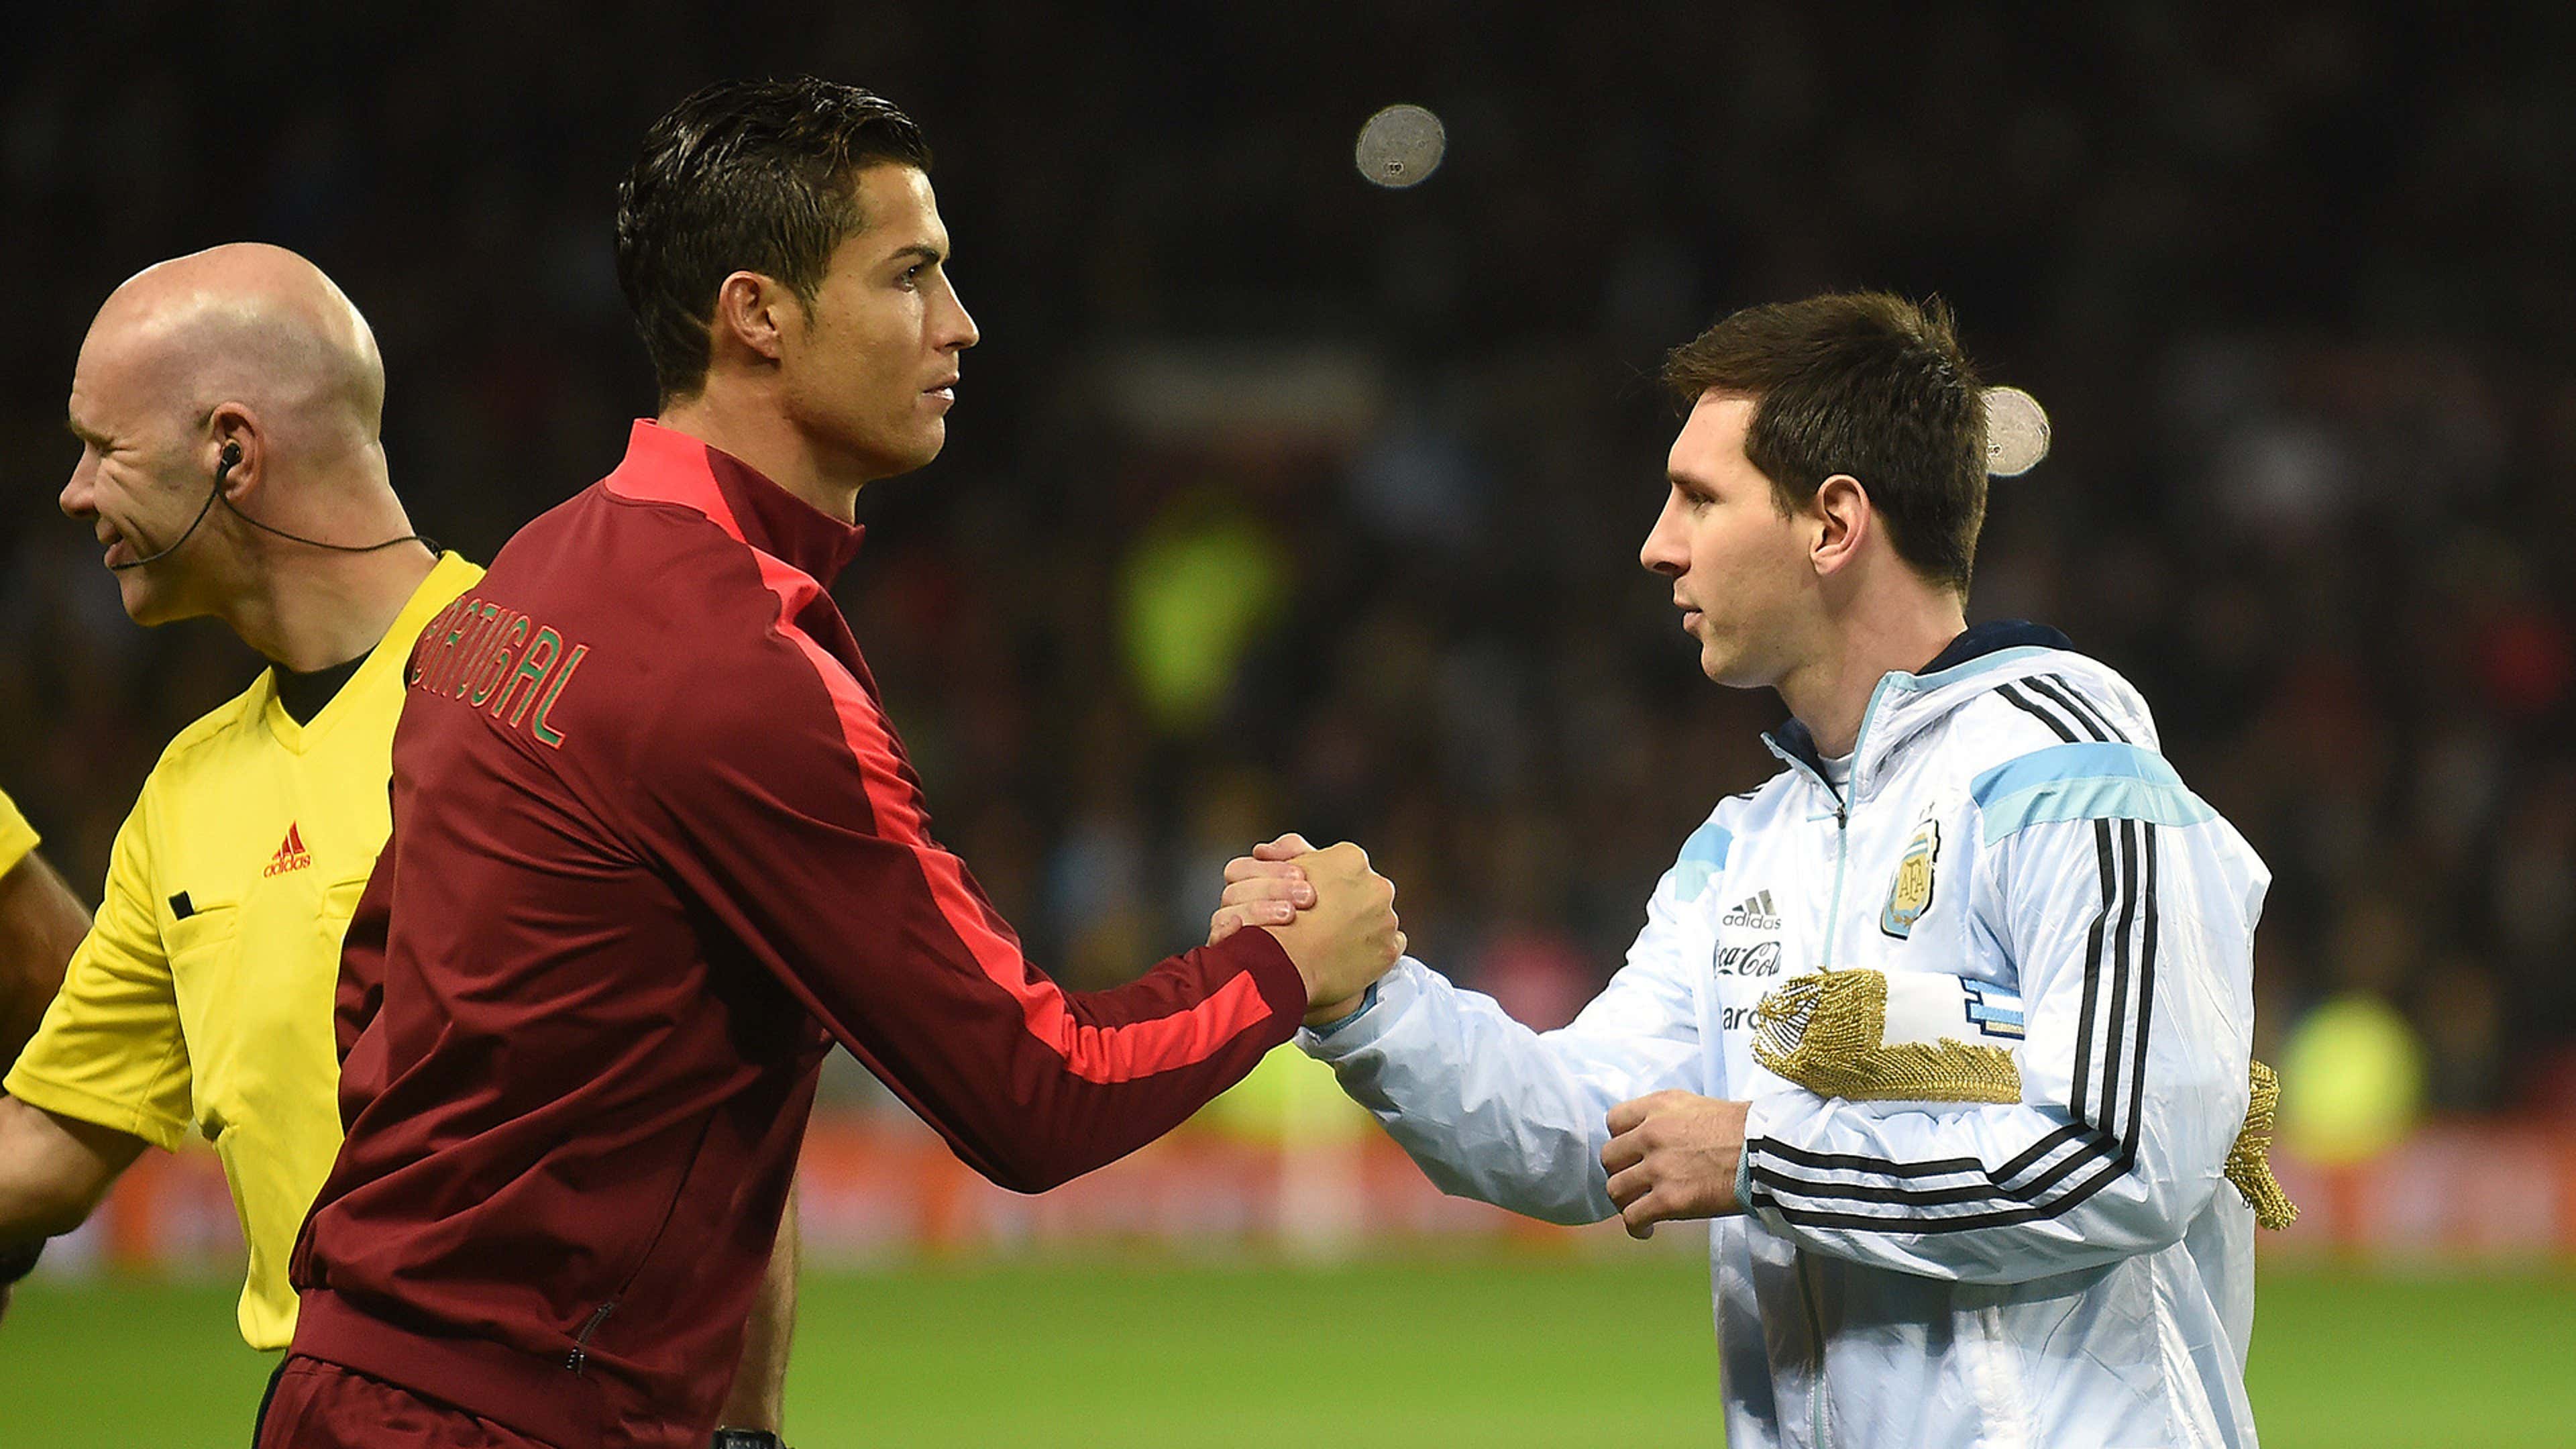 Lionel Messi: FIFA World Cup: Lionel Messi vs Cristiano Ronaldo, comparing  legends' World Cup records - The Economic Times